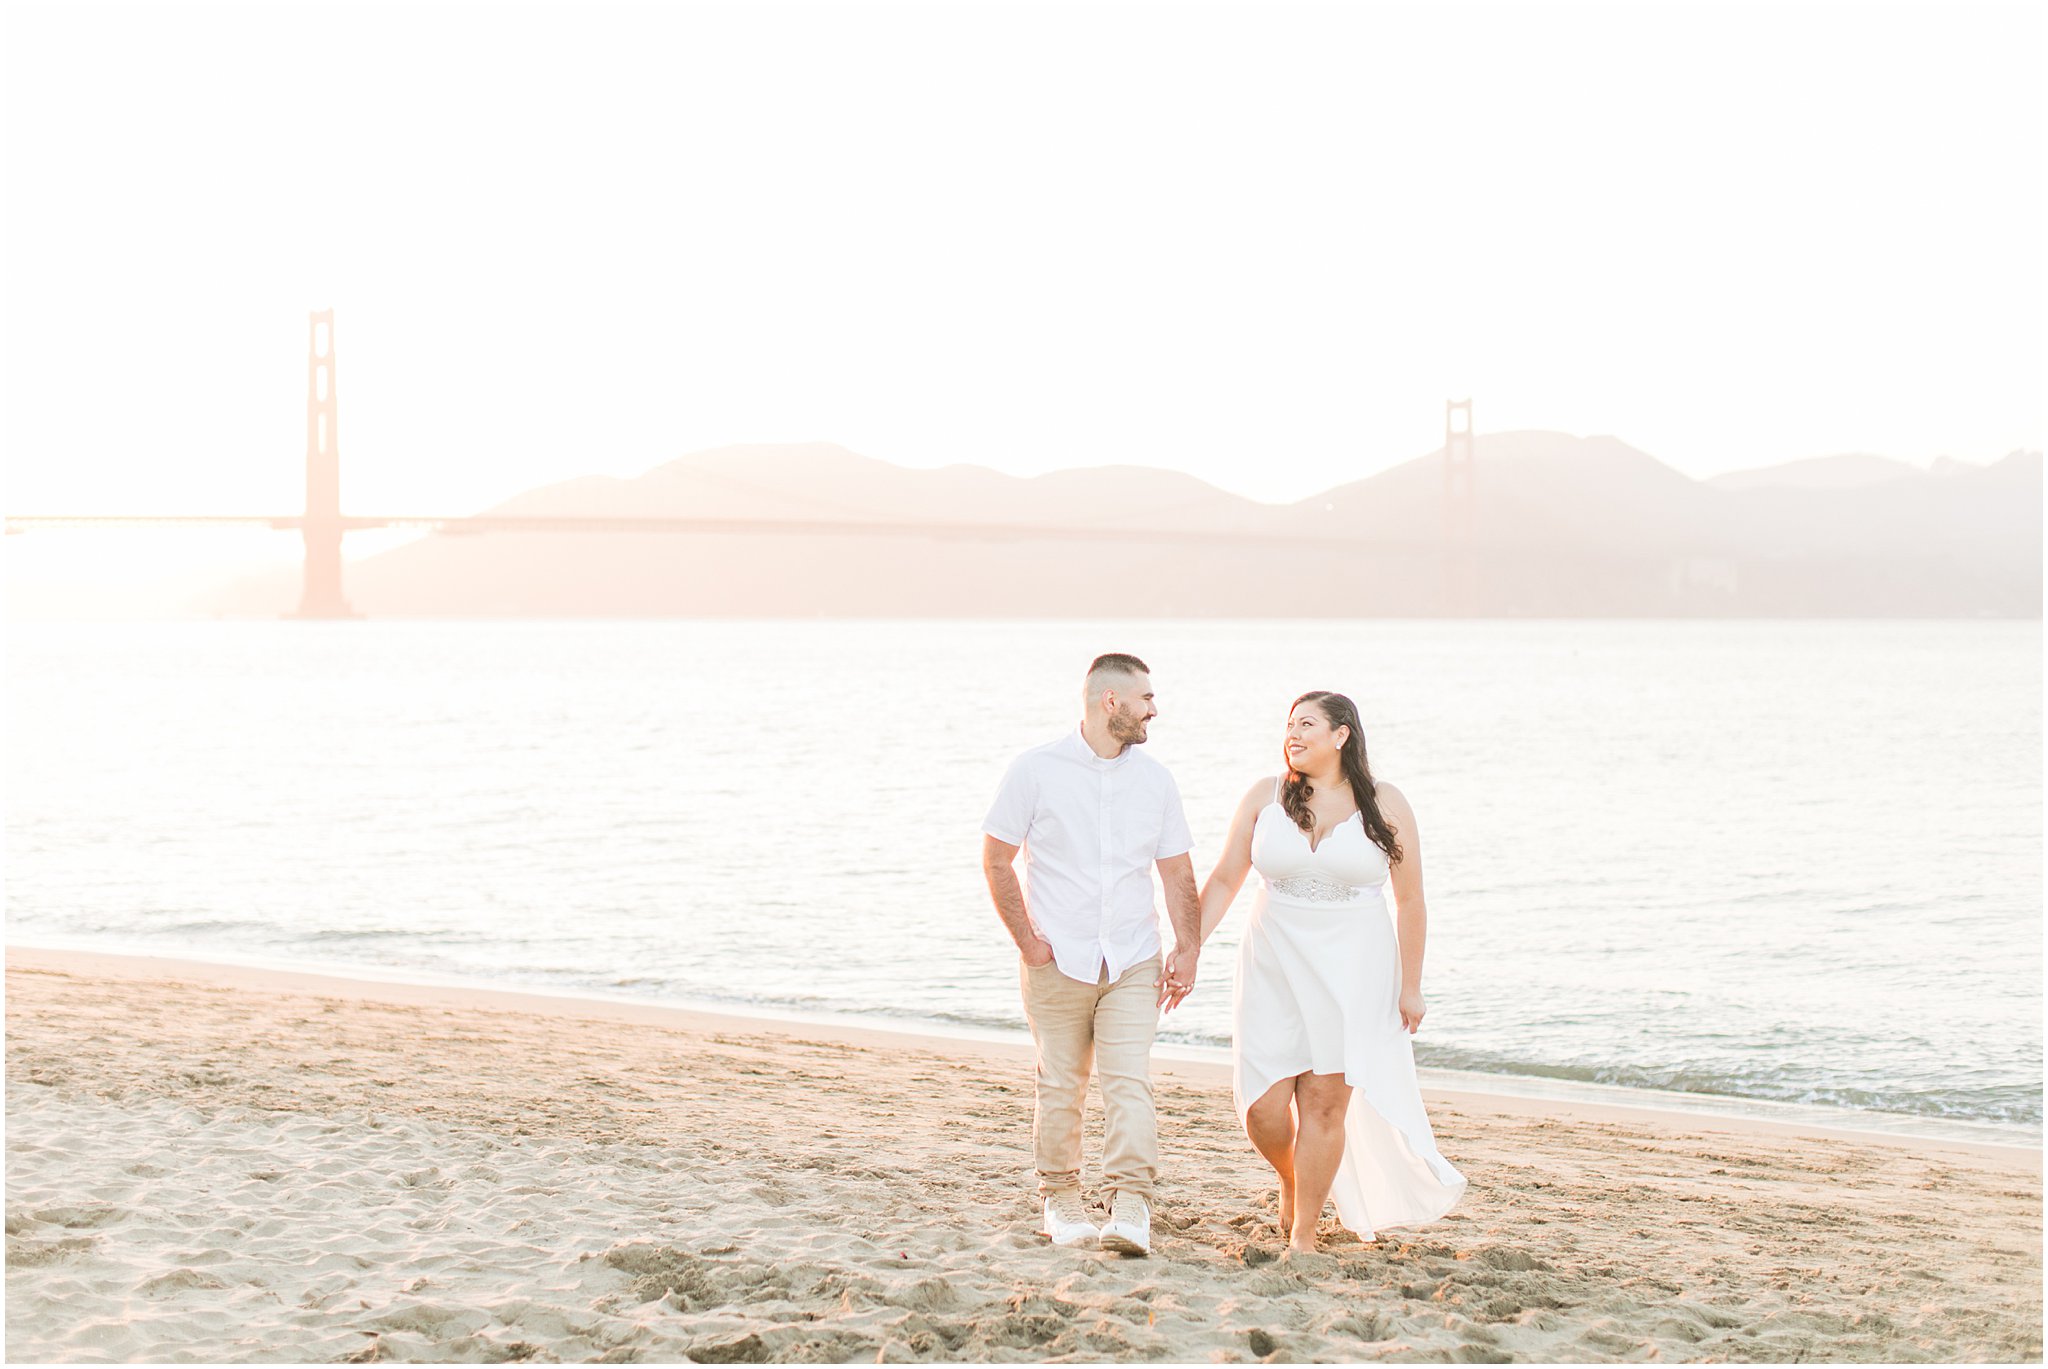 San Francisco Engagement Photo - Bay Area Wedding Photographer - Angela Sue Photography